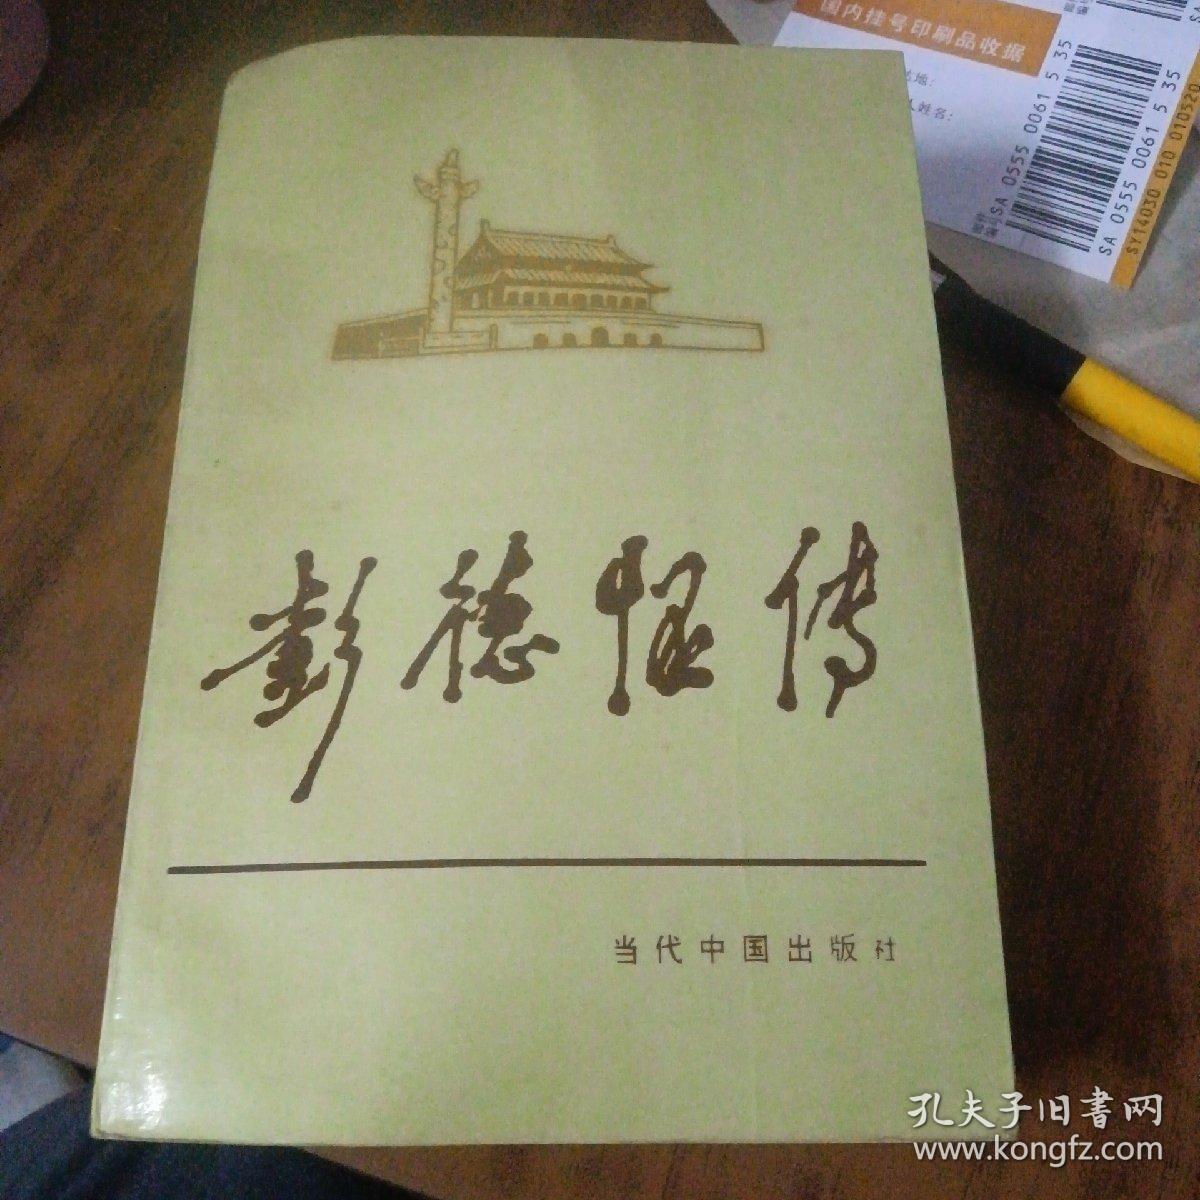 彭德怀传（1993年一版一印）原版如图、内页干净丶品好

当代中国人物传记丛书编辑